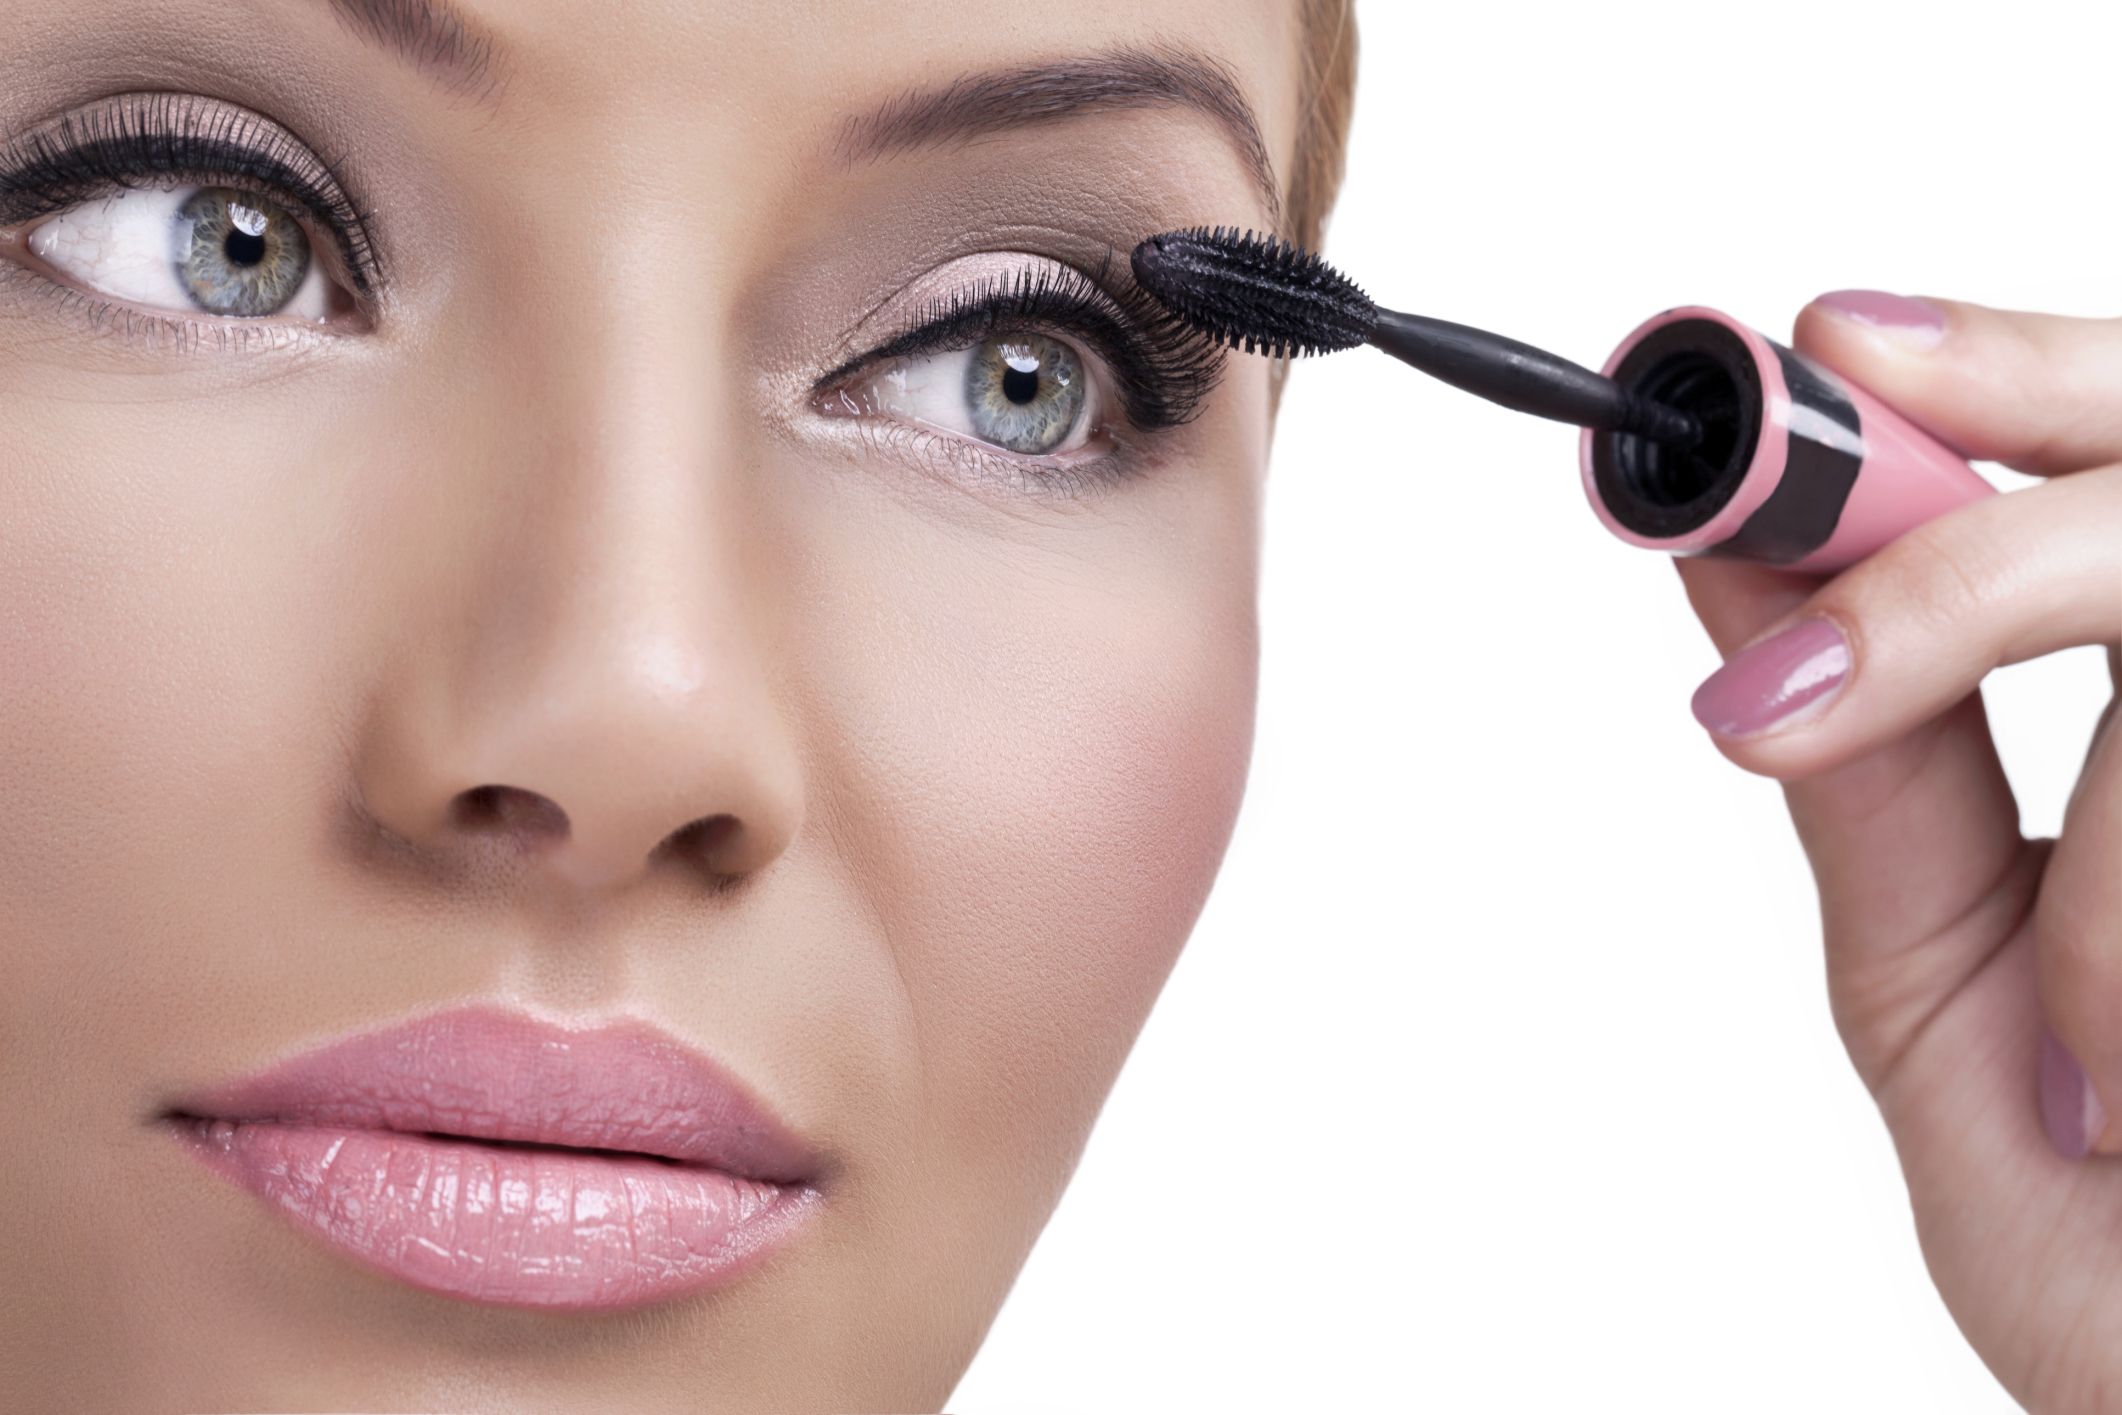 Подобрать макияж онлайн по своему фото